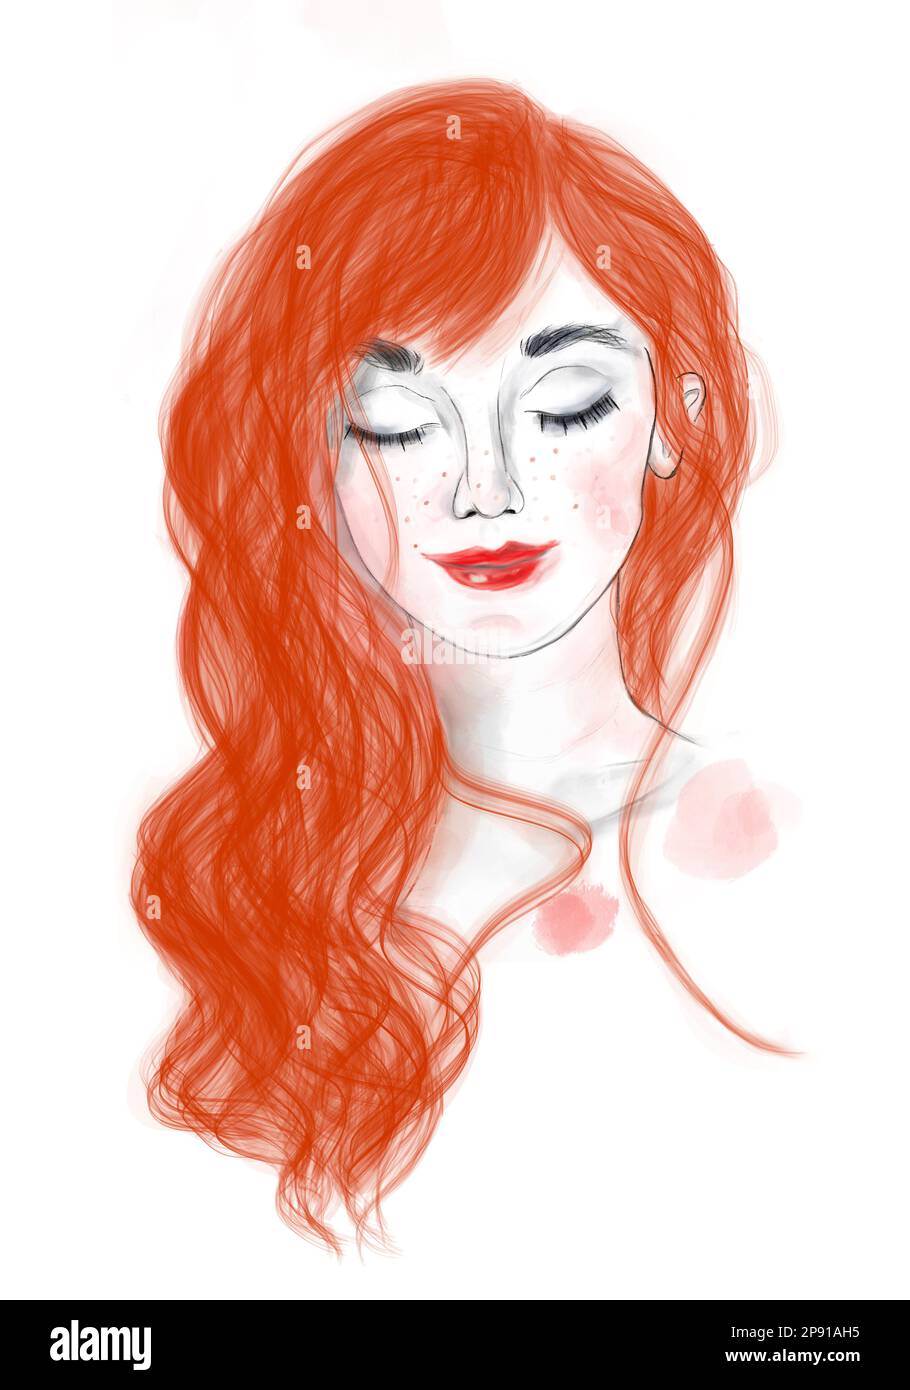 Jolie illustration numérique d'une fille aux cheveux rouges avec des cheveux de feu. La fille rêve et sourit quelque chose avec les yeux fermés. Elle est belle. Banque D'Images